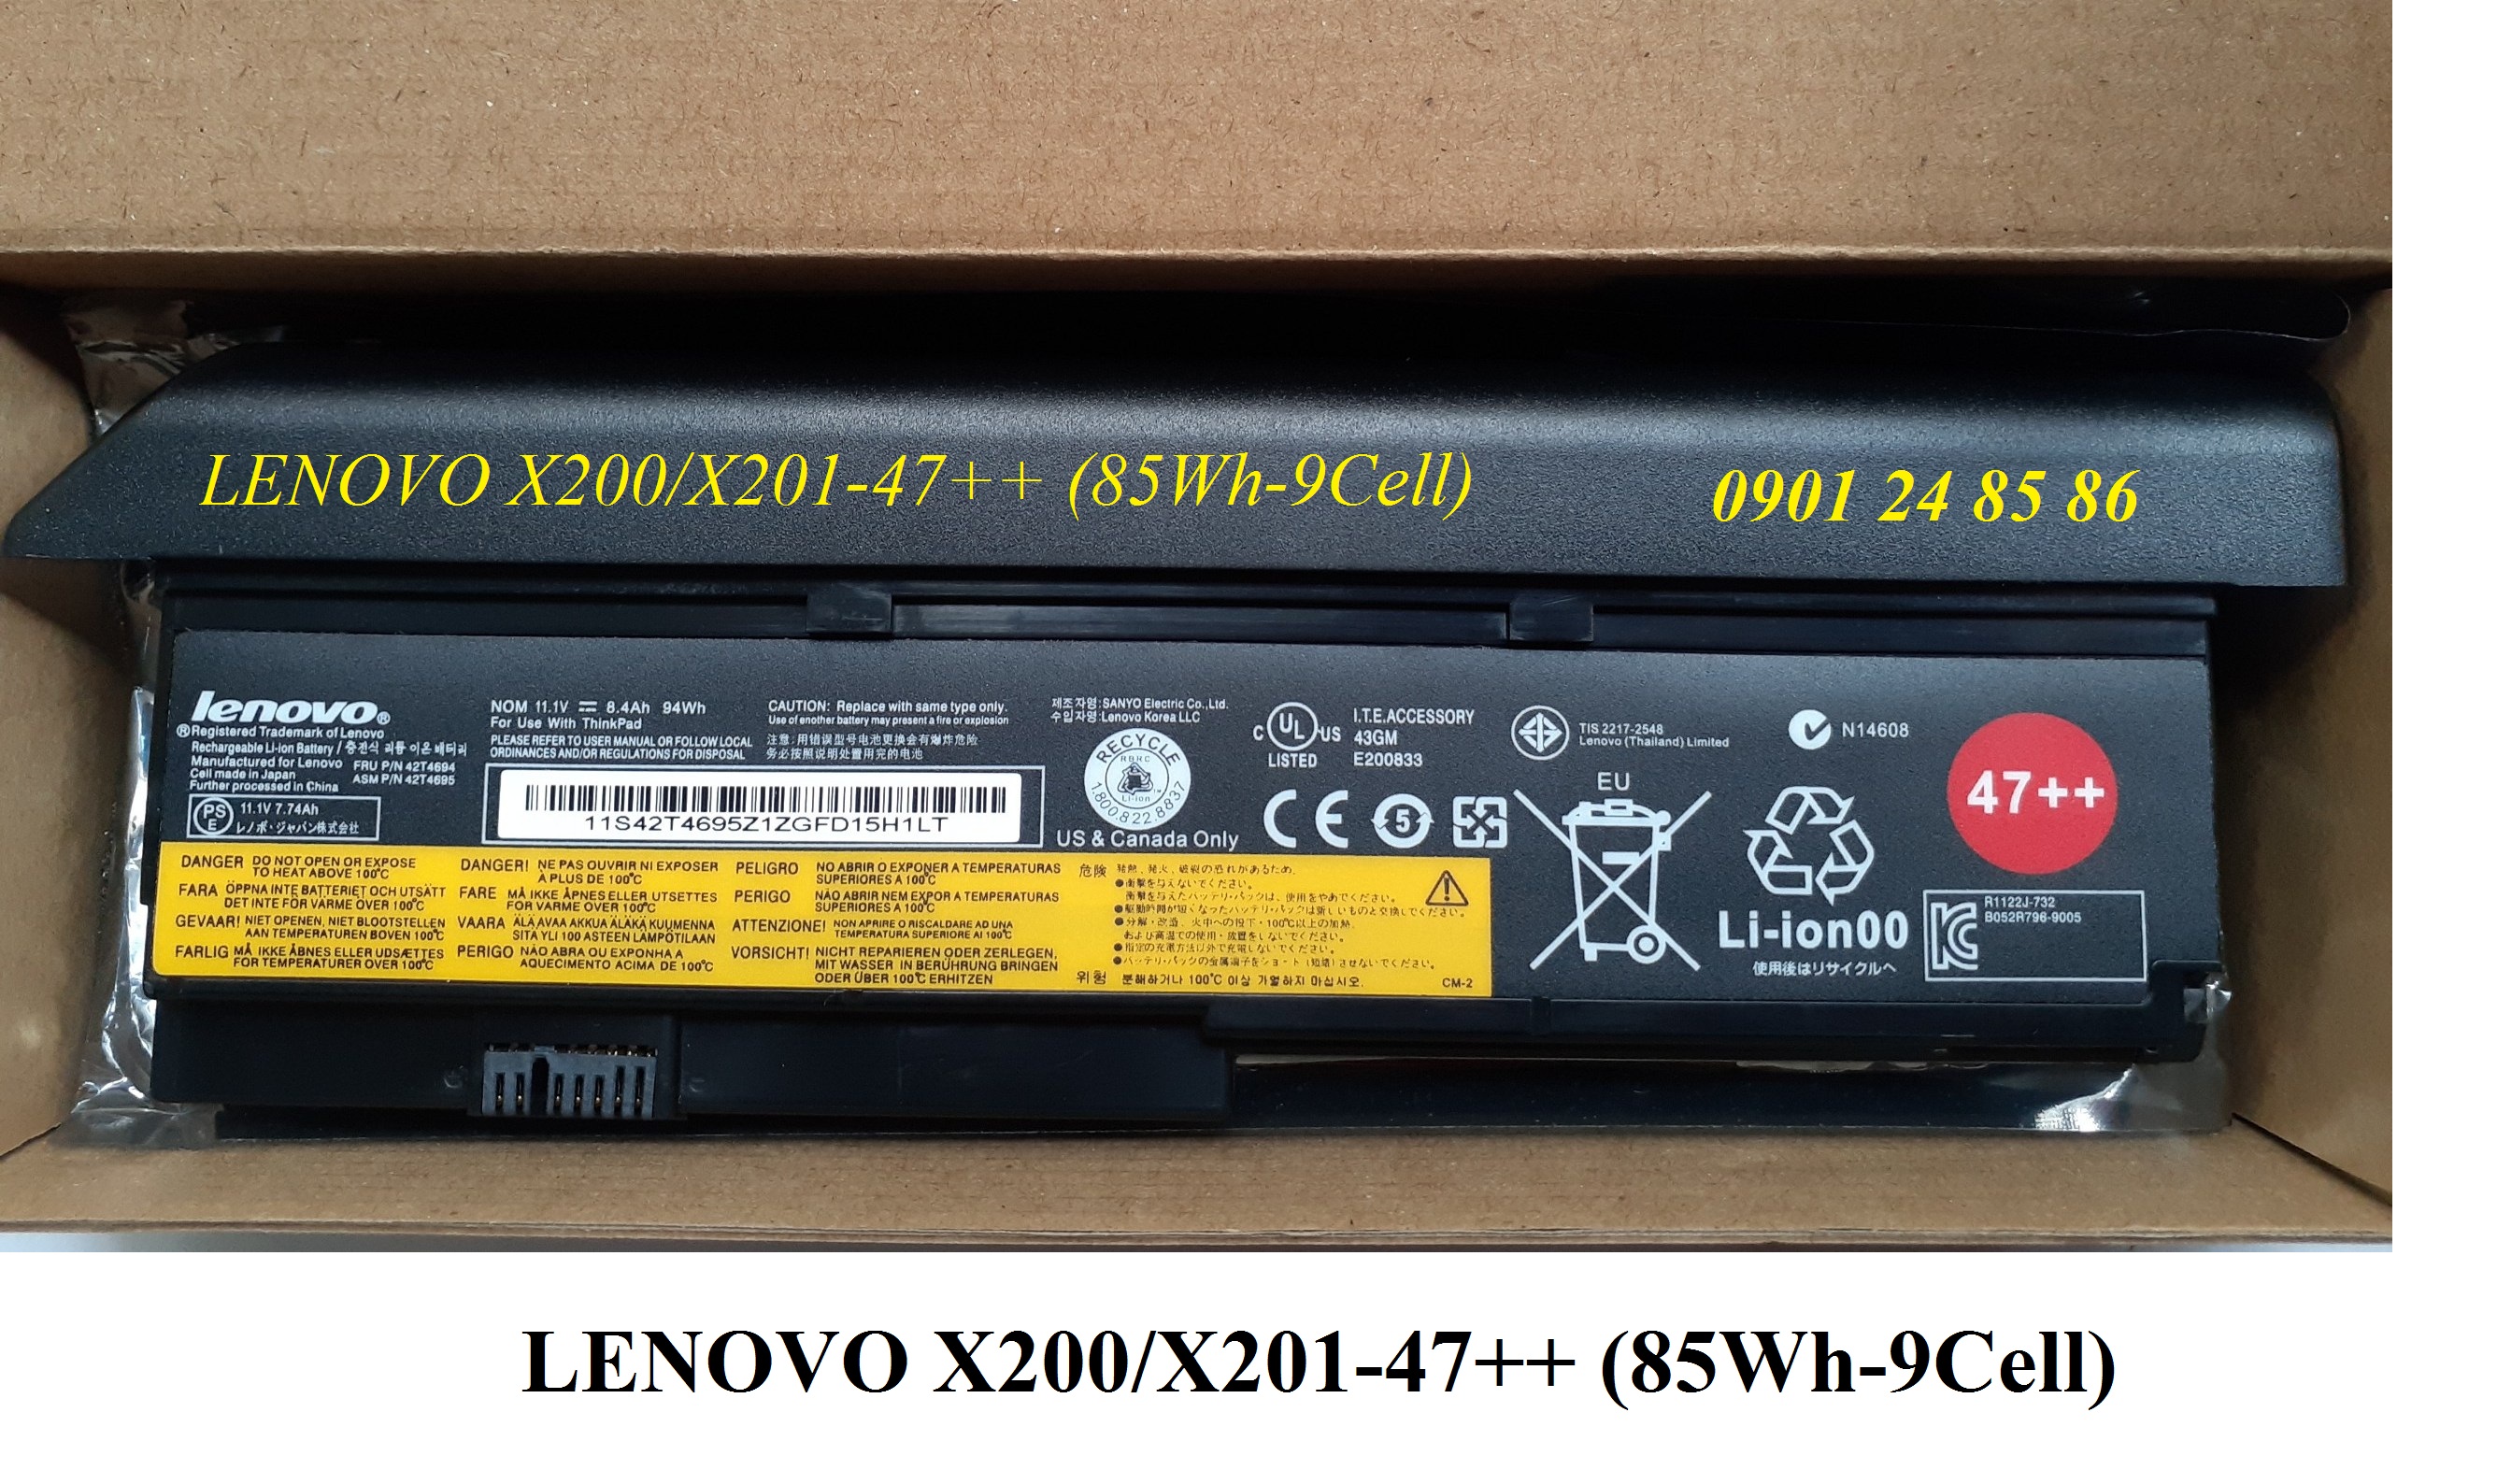 Pin Laptop Lenovo/ Battery Lenovo/ Pin Lenovo Thinkpad X200/ X200s/ X201/ X201s/ X201i/ 42T4542/ 42T4695/ 42T4834 (11.1V-94W-9Cell) 47++